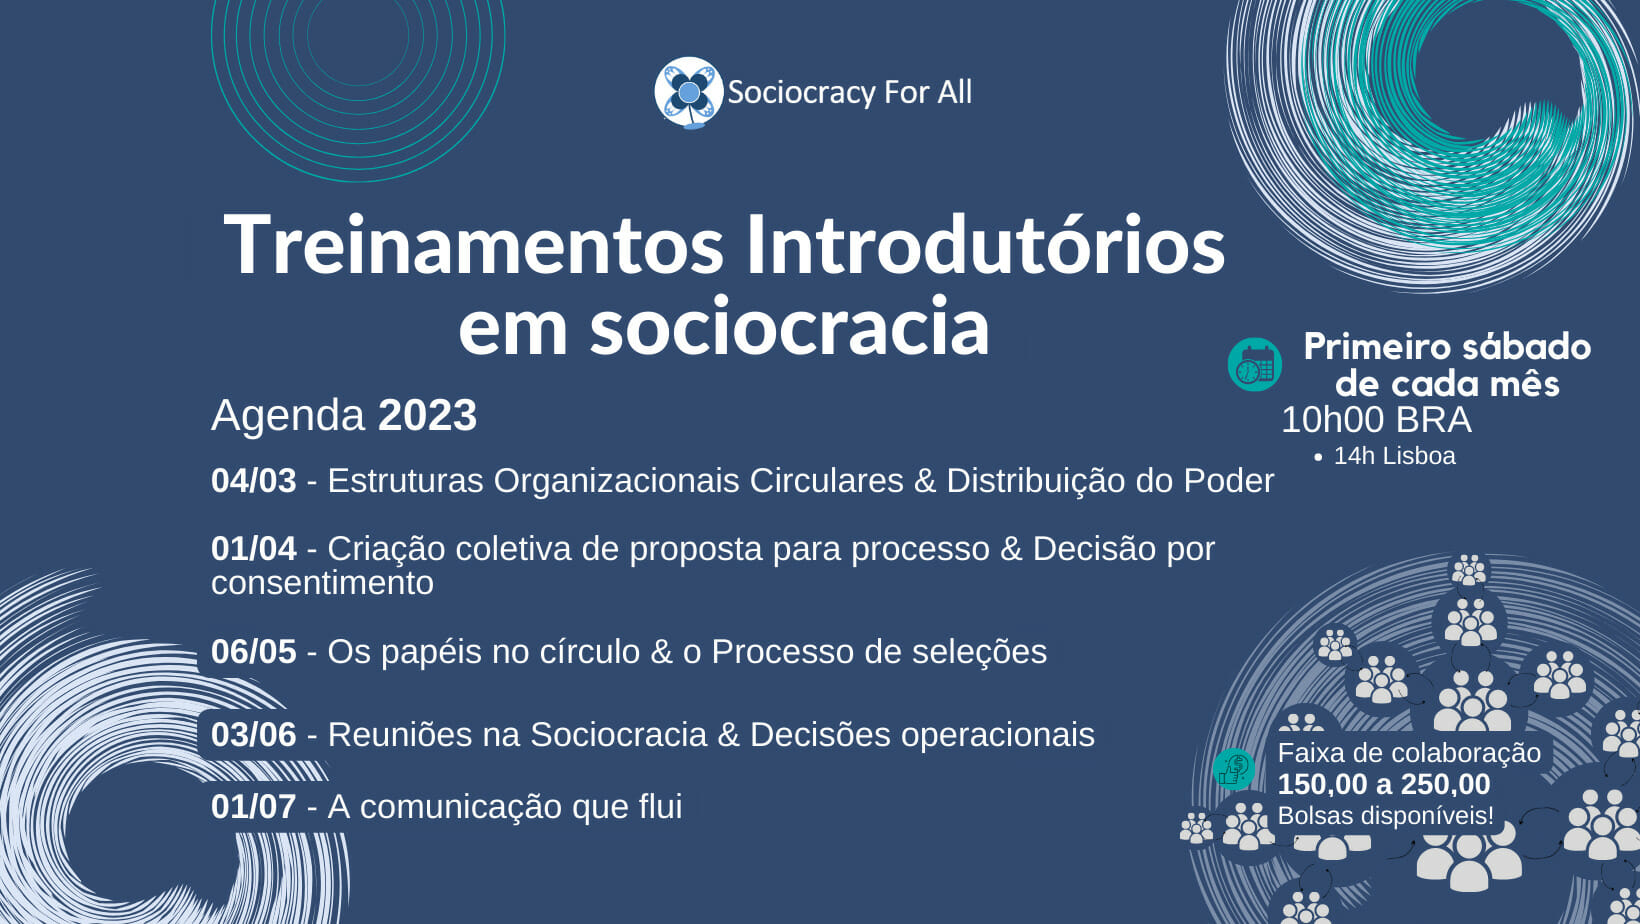 2023 - Treinamentos introdutórios em Sociocracia - Sociocracy For All